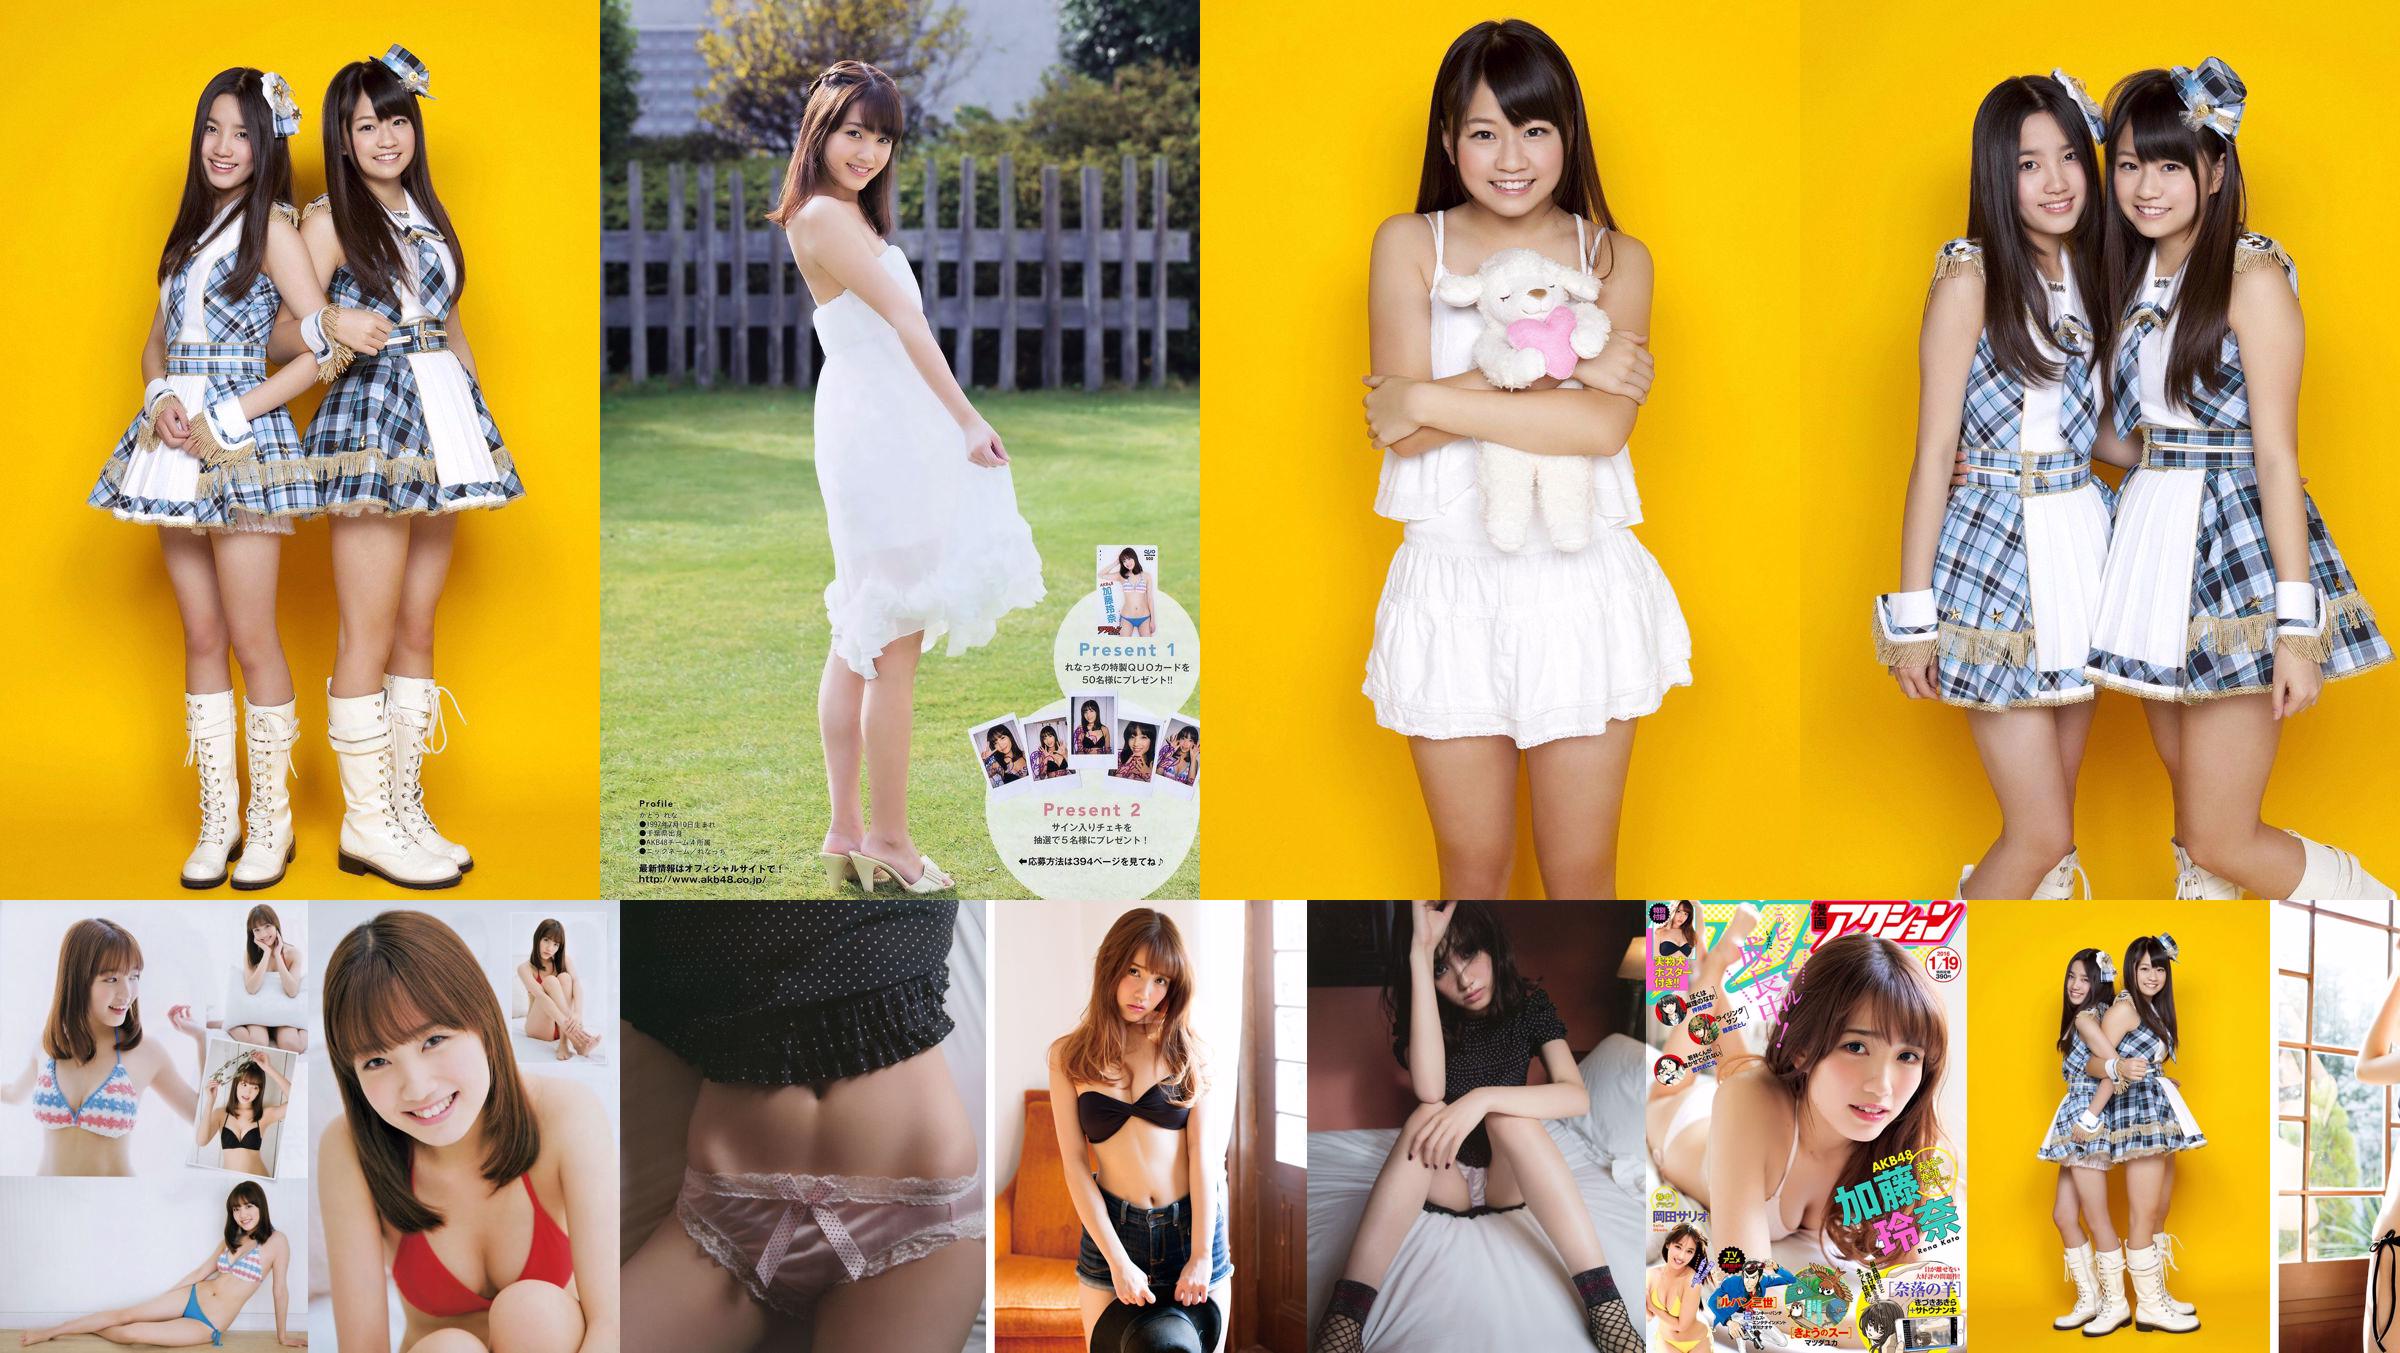 Shimada Haruka / Kato Rena "AKB48 Next Girls 1st" [YS Web] Vol.393 No.dd4085 Pagina 1